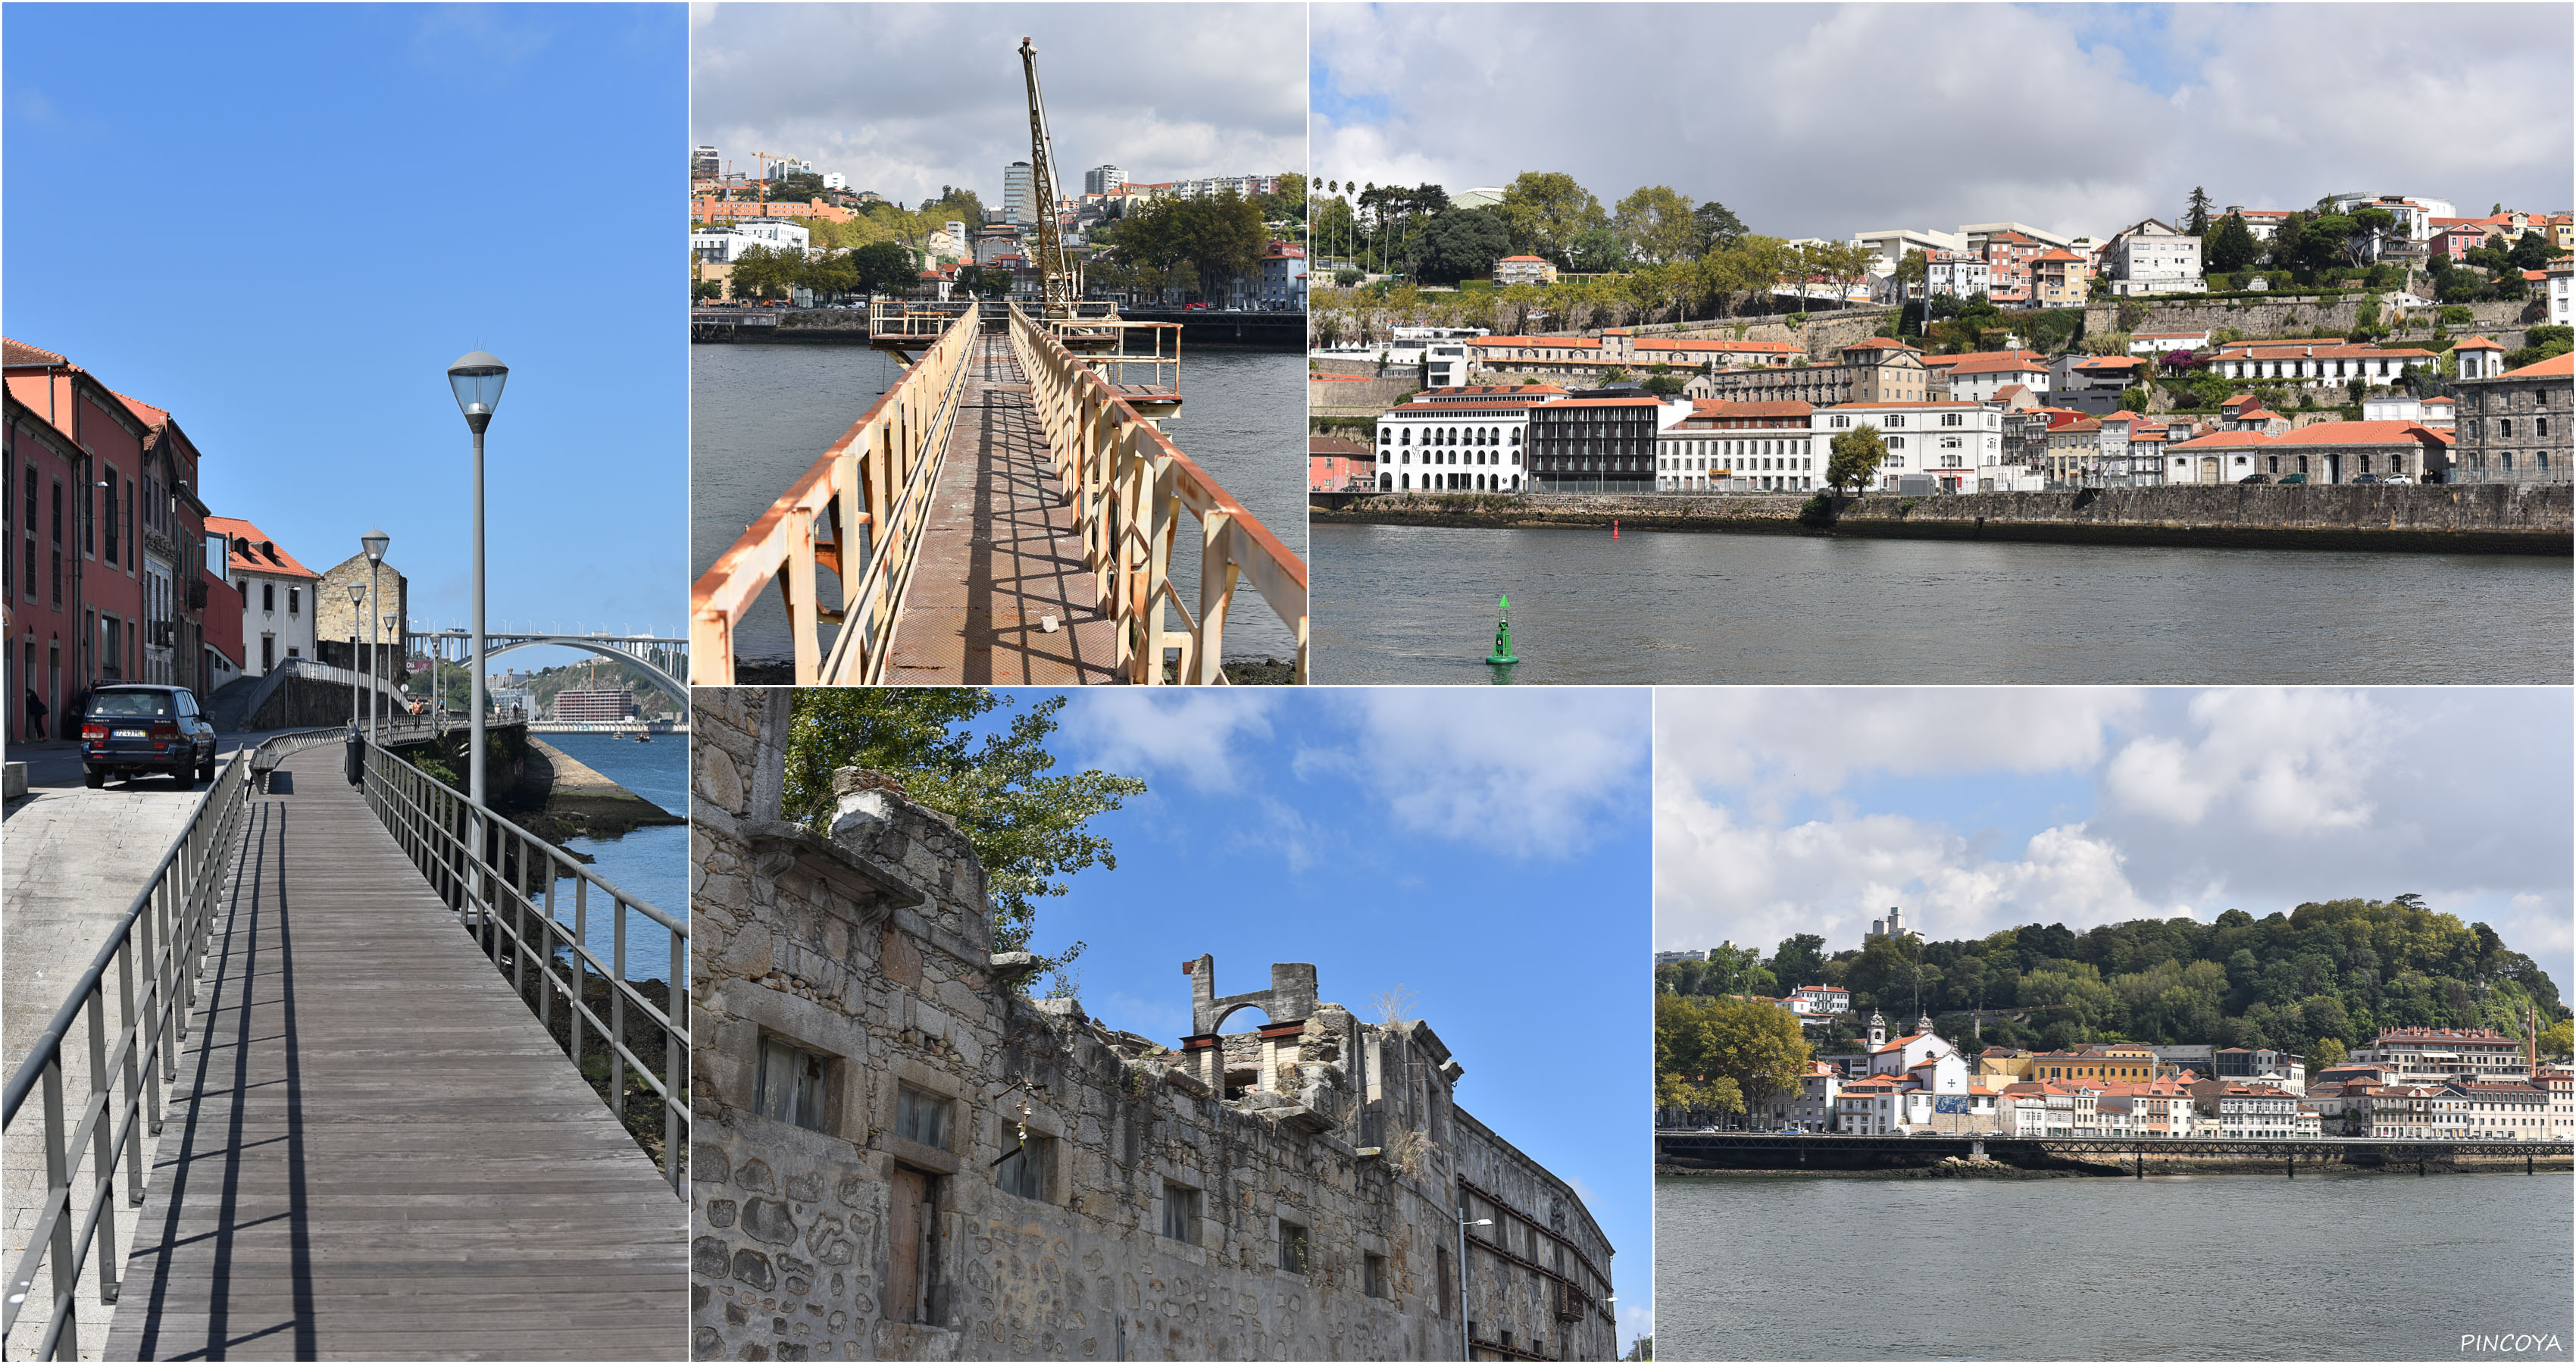 „Uferwege des Douro“